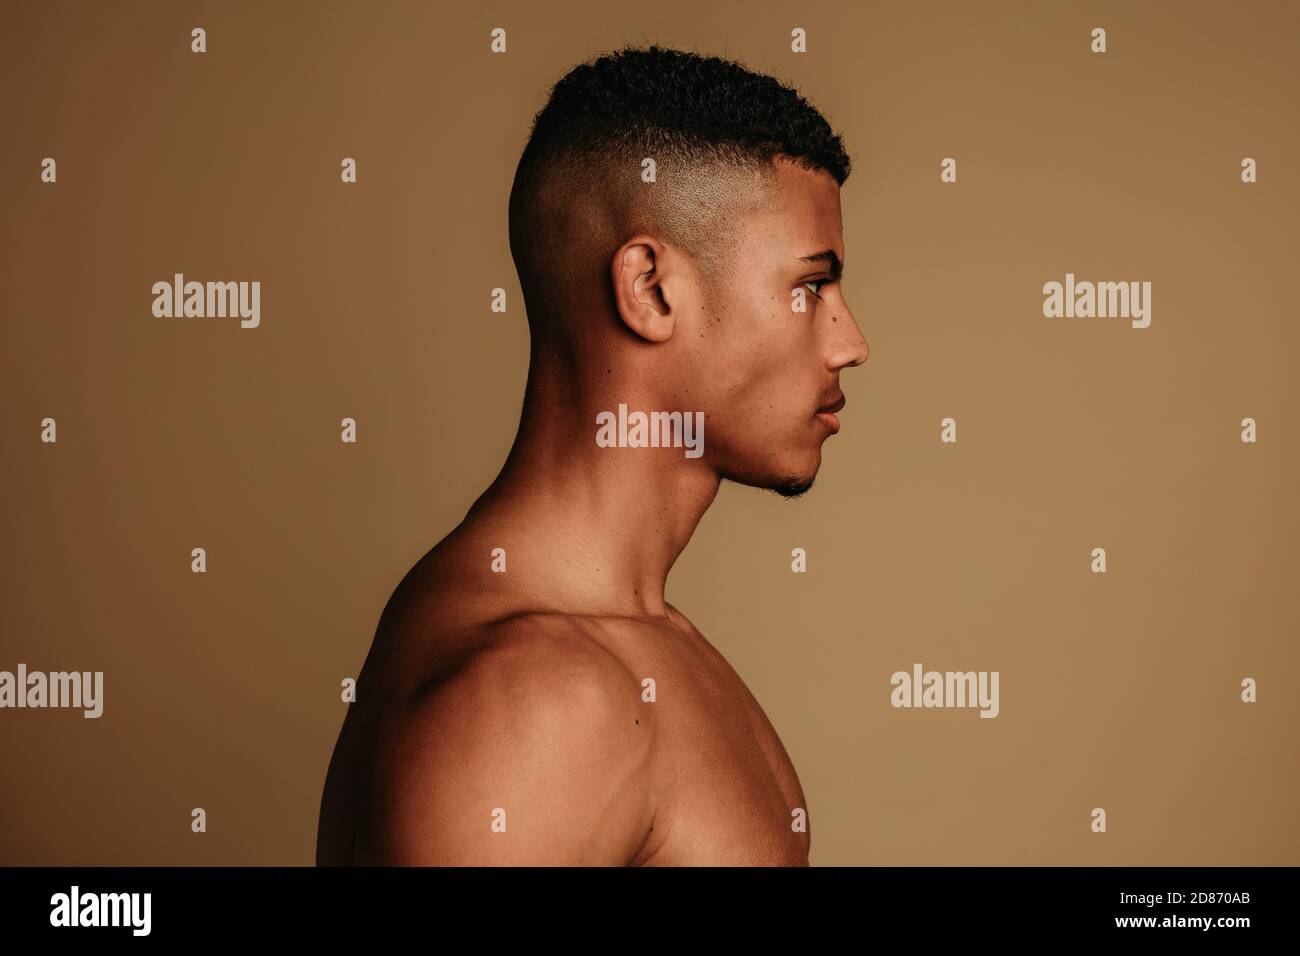 Seitenansicht eines afroamerikanischen Mannes auf braunem Hintergrund. Porträt eines gerafften muskulösen Mannes mit kurzen Haaren. Stockfoto